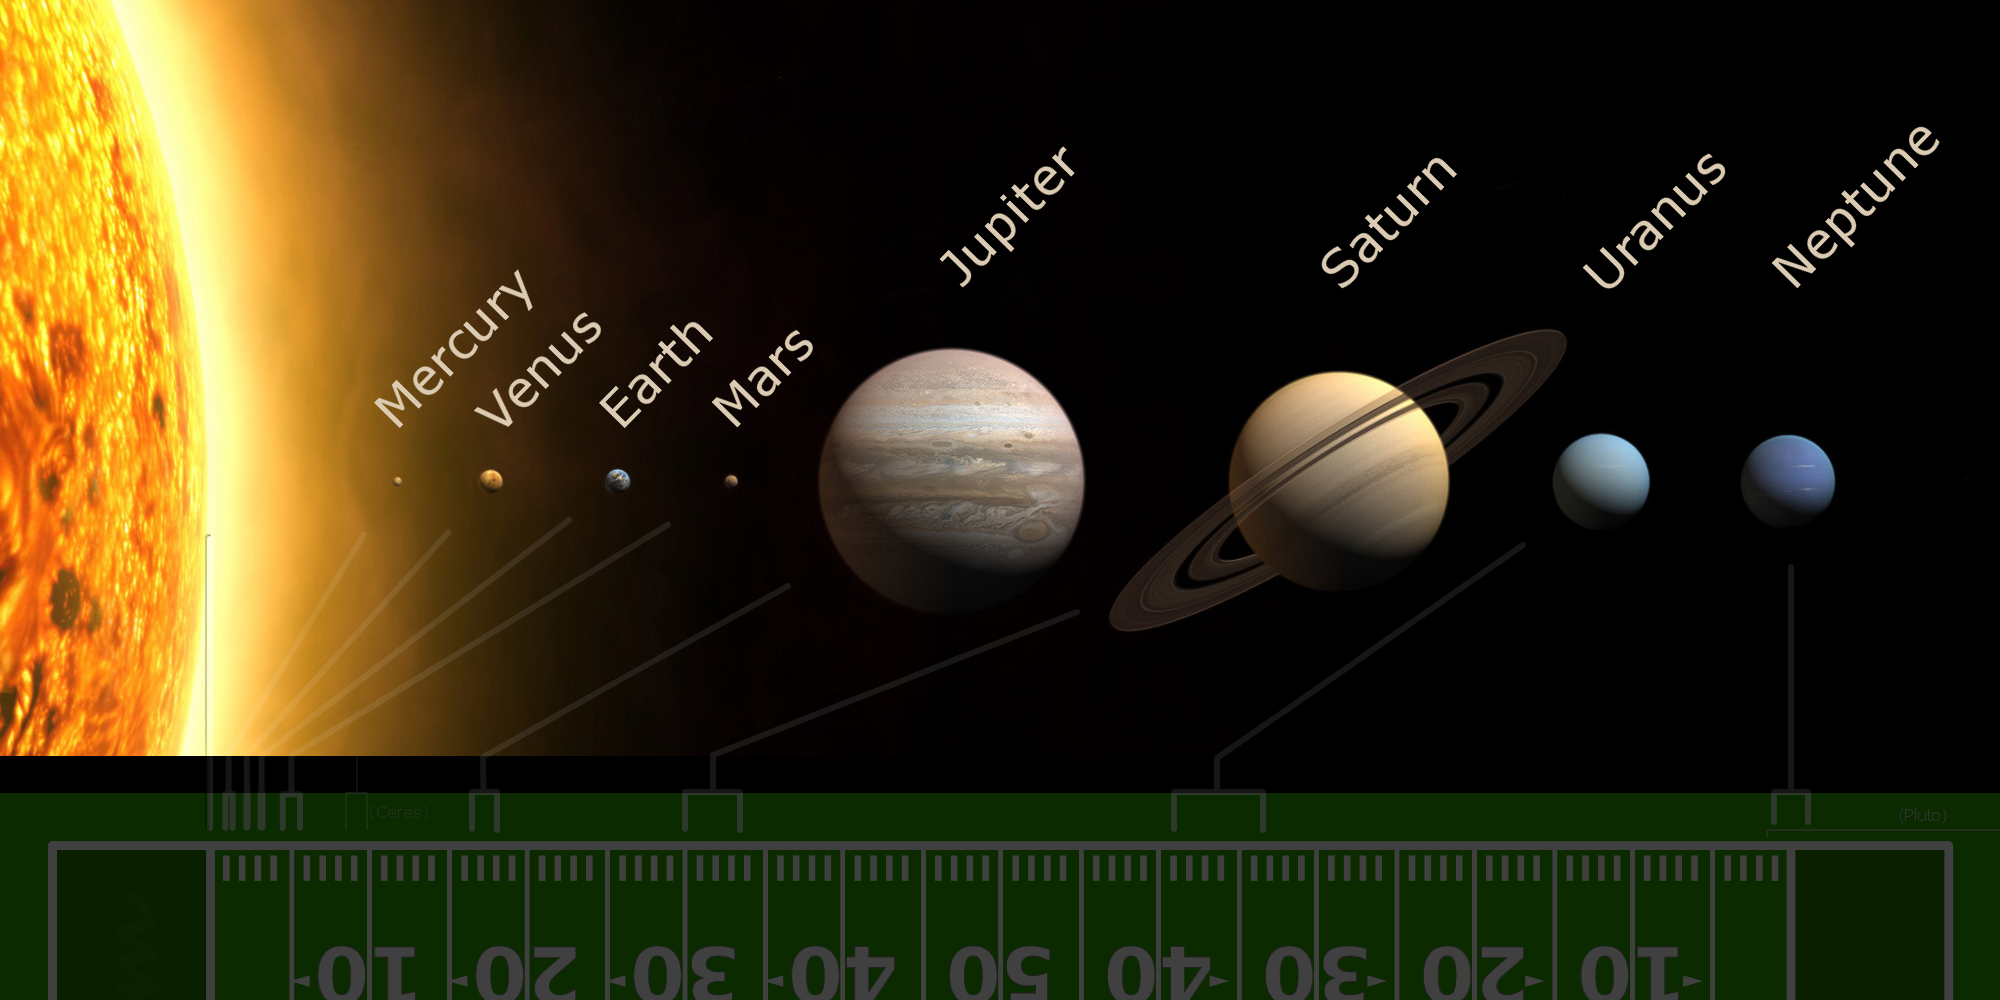 Название планет на английском. Солнечная система. Солнечная система на английском. Планеты от солнца. Планеты по английскому.